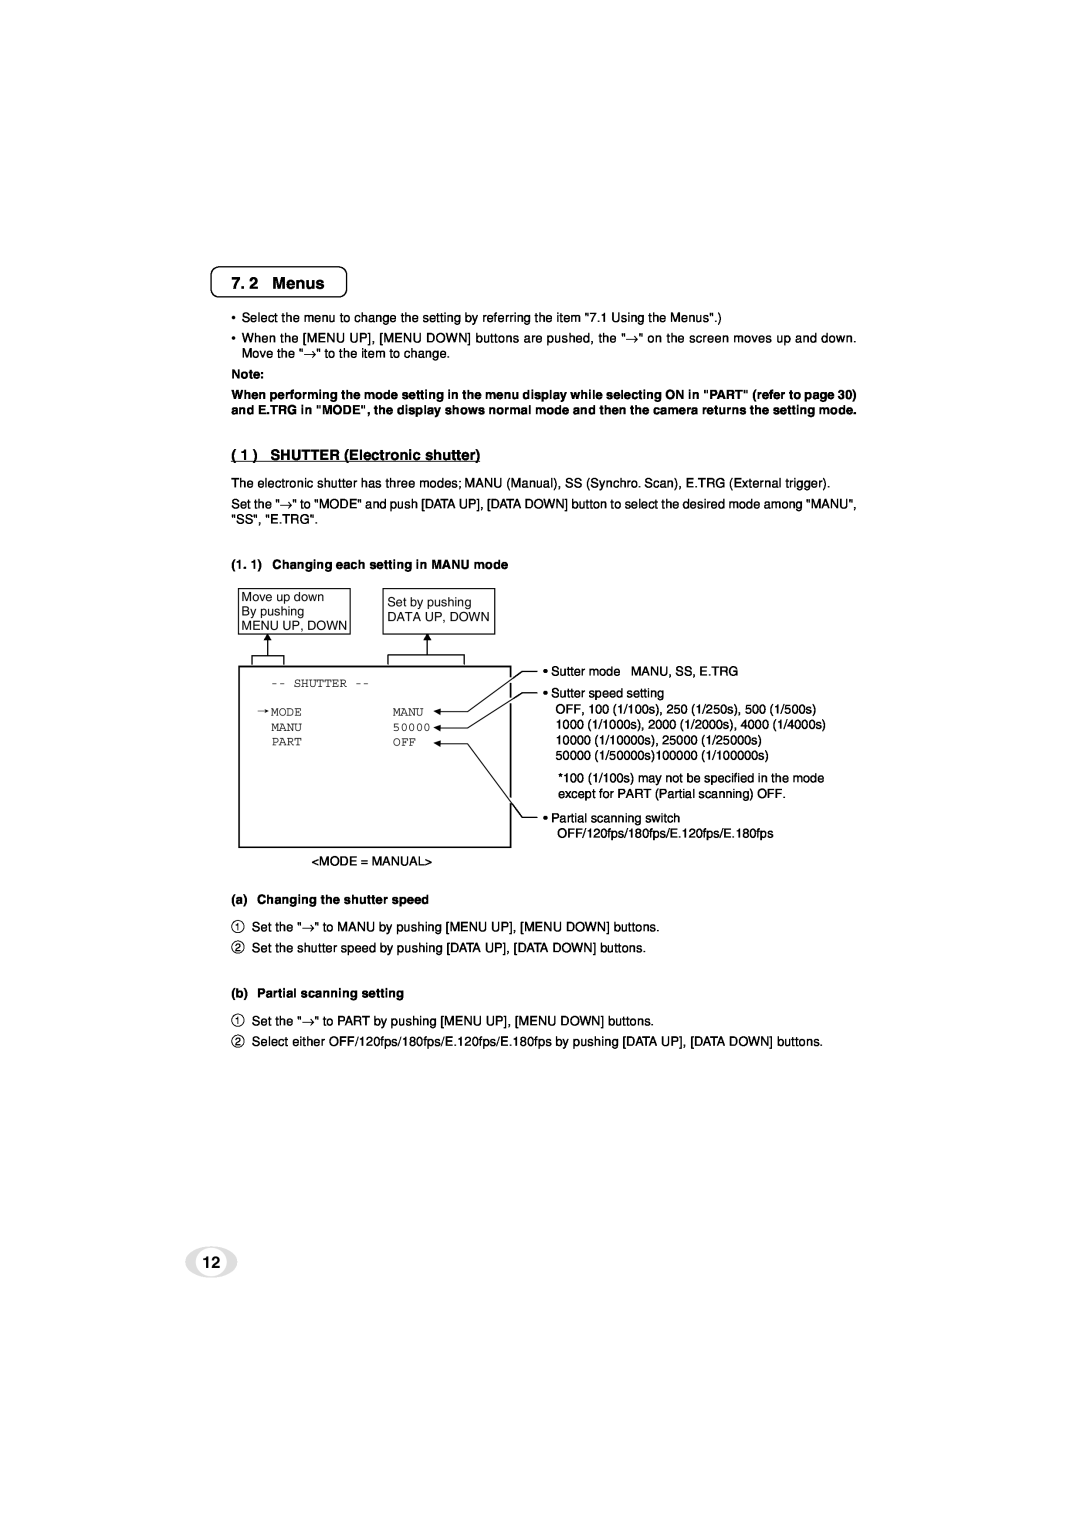 Toshiba IK-TF5C instruction manual 7. 2 Menus, SHUTTER Electronic shutter 